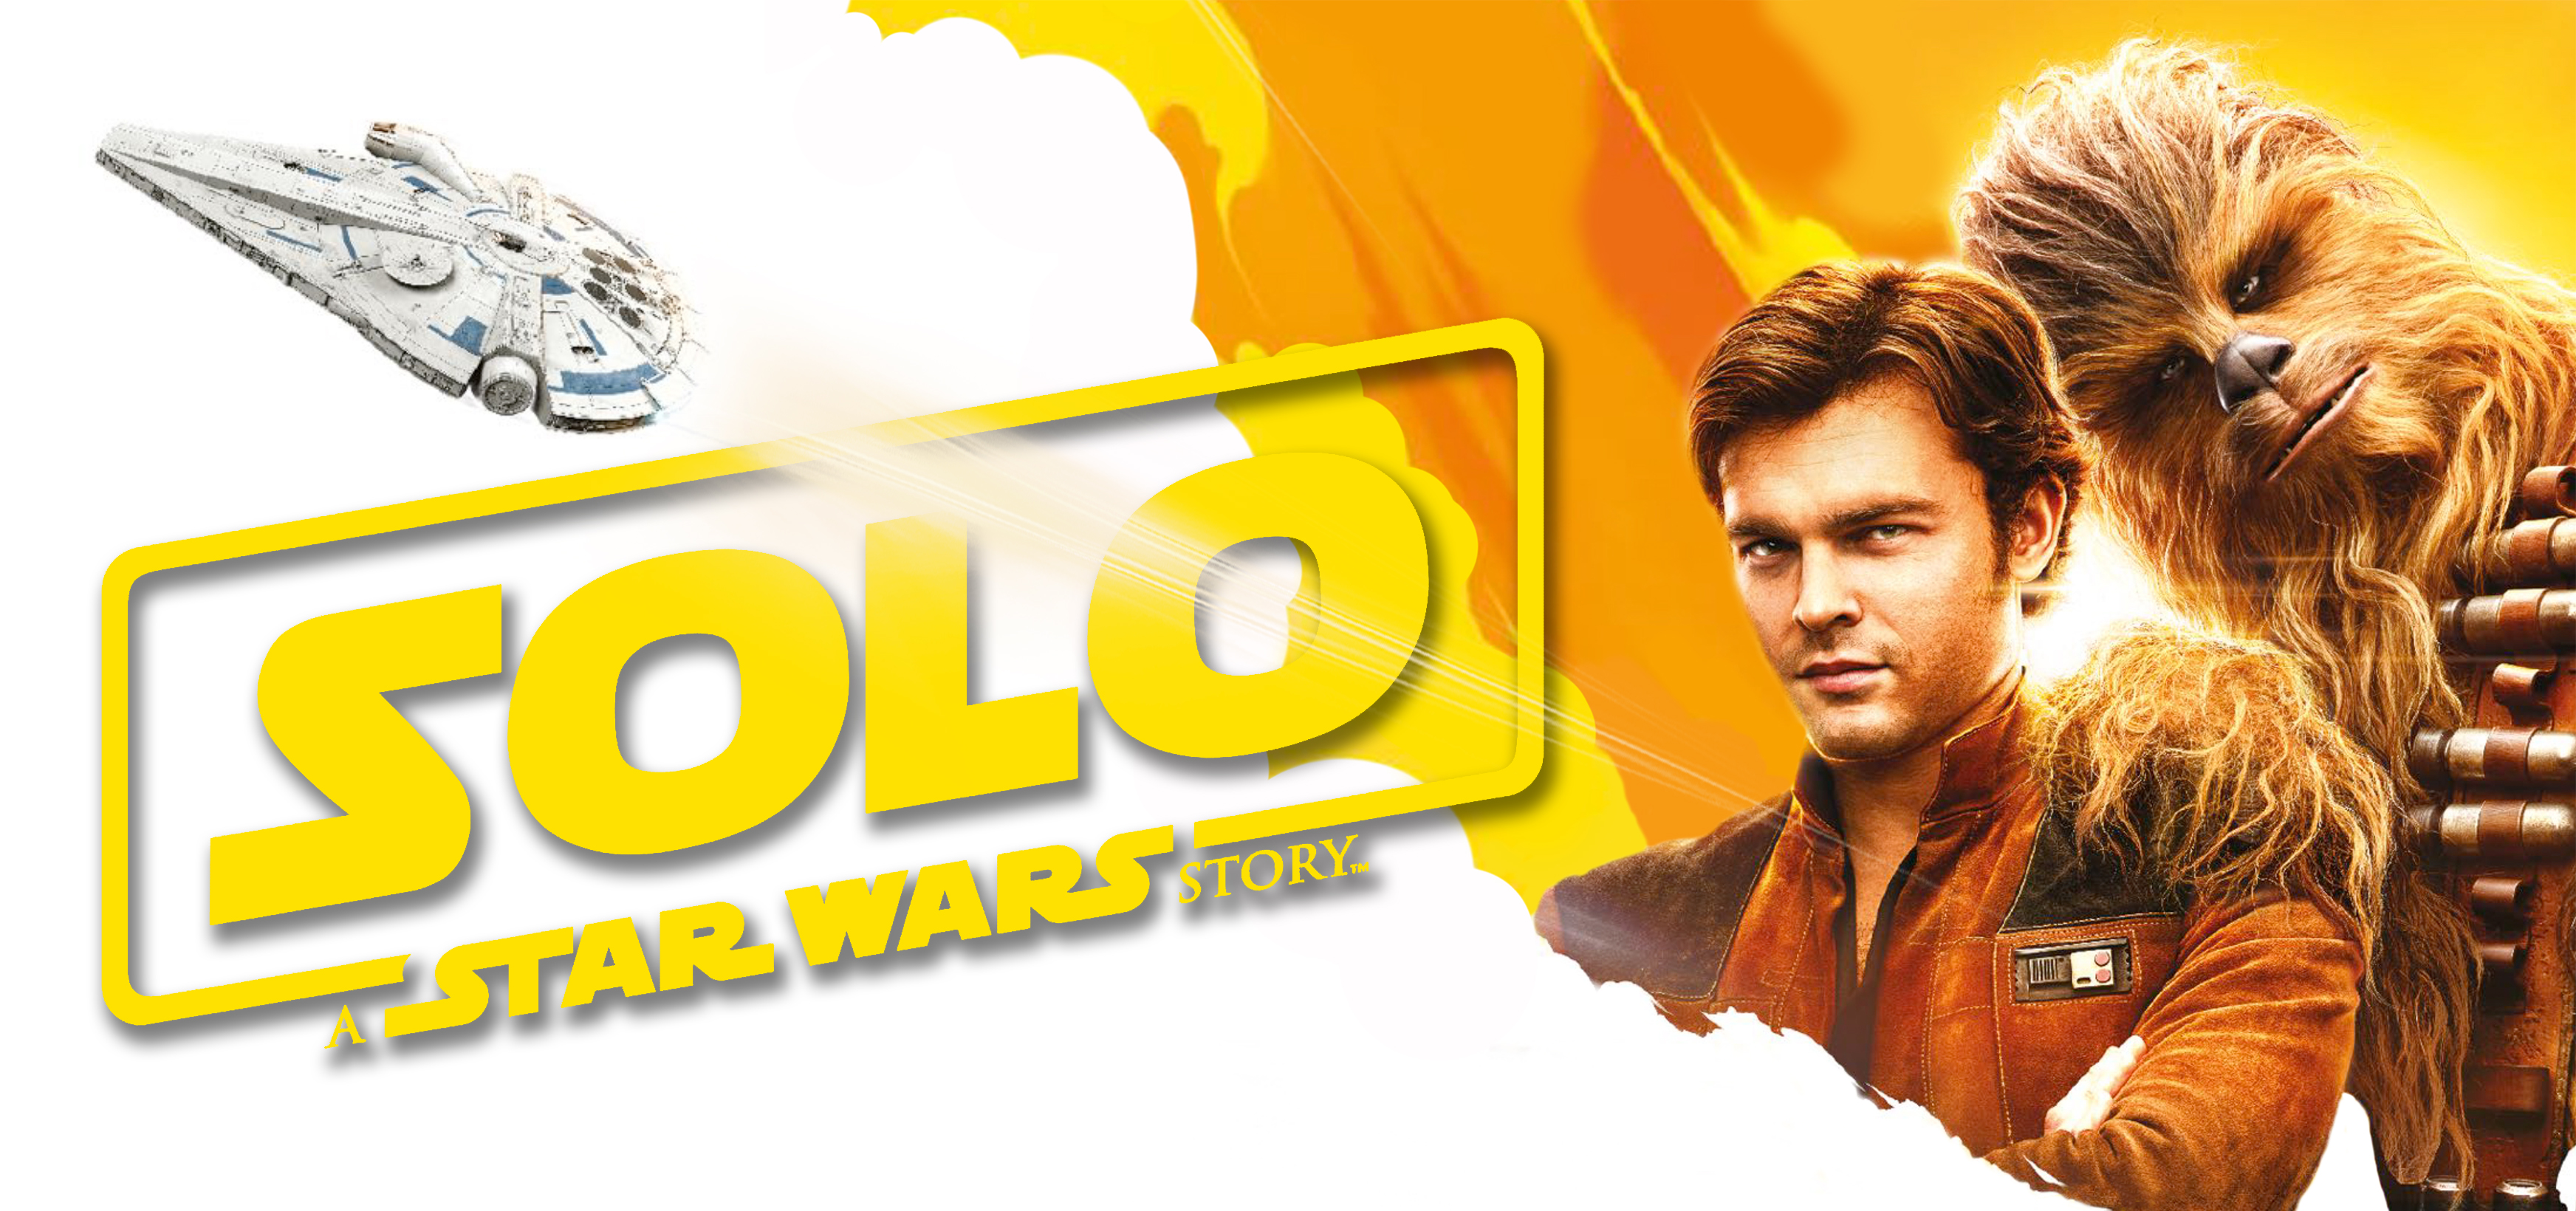 Alden Ehrenreich Chewbacca Han Solo Millennium Falcon Star Wars 3488x1640